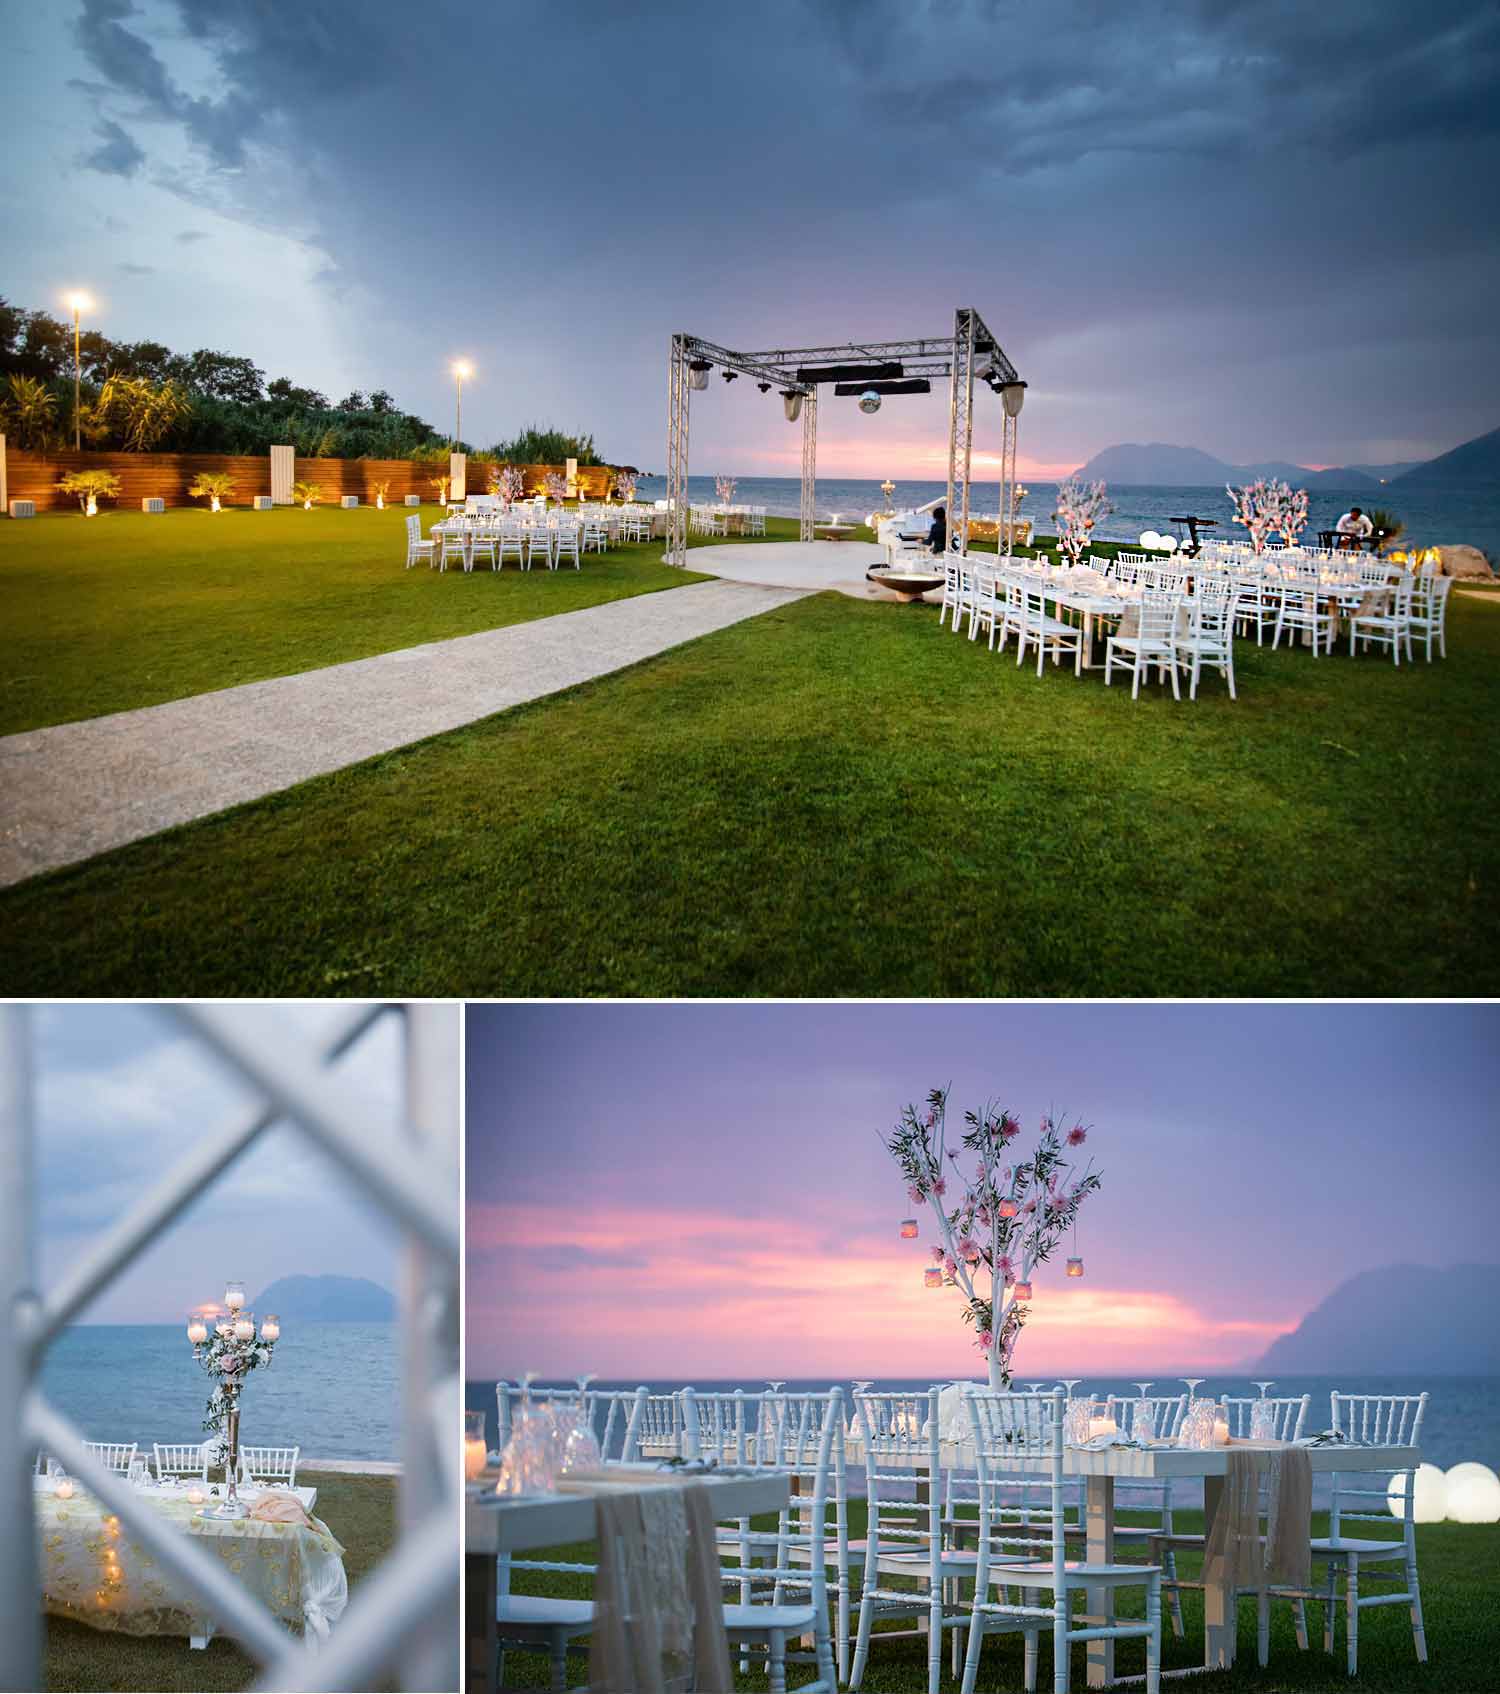 Wedding venue decoration in Greece